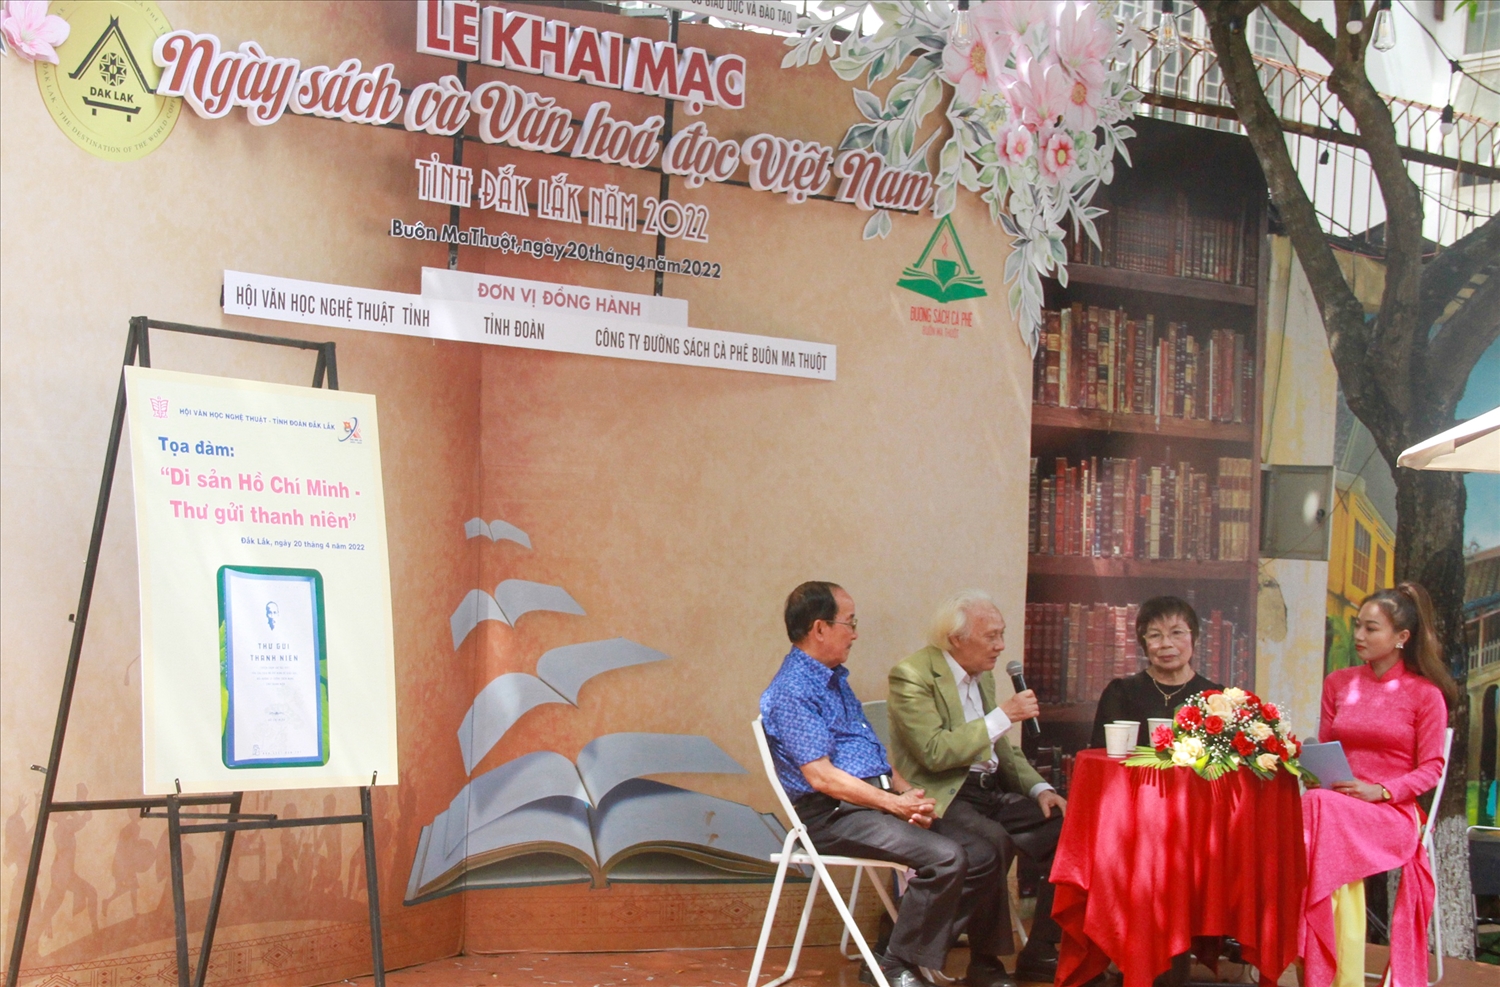 Tọa đàm “Di sản Hồ Chí Minh-Thư gửi thanh niên” là sự kiện hấp dẫn trong Ngày sách và Văn hóa đọc